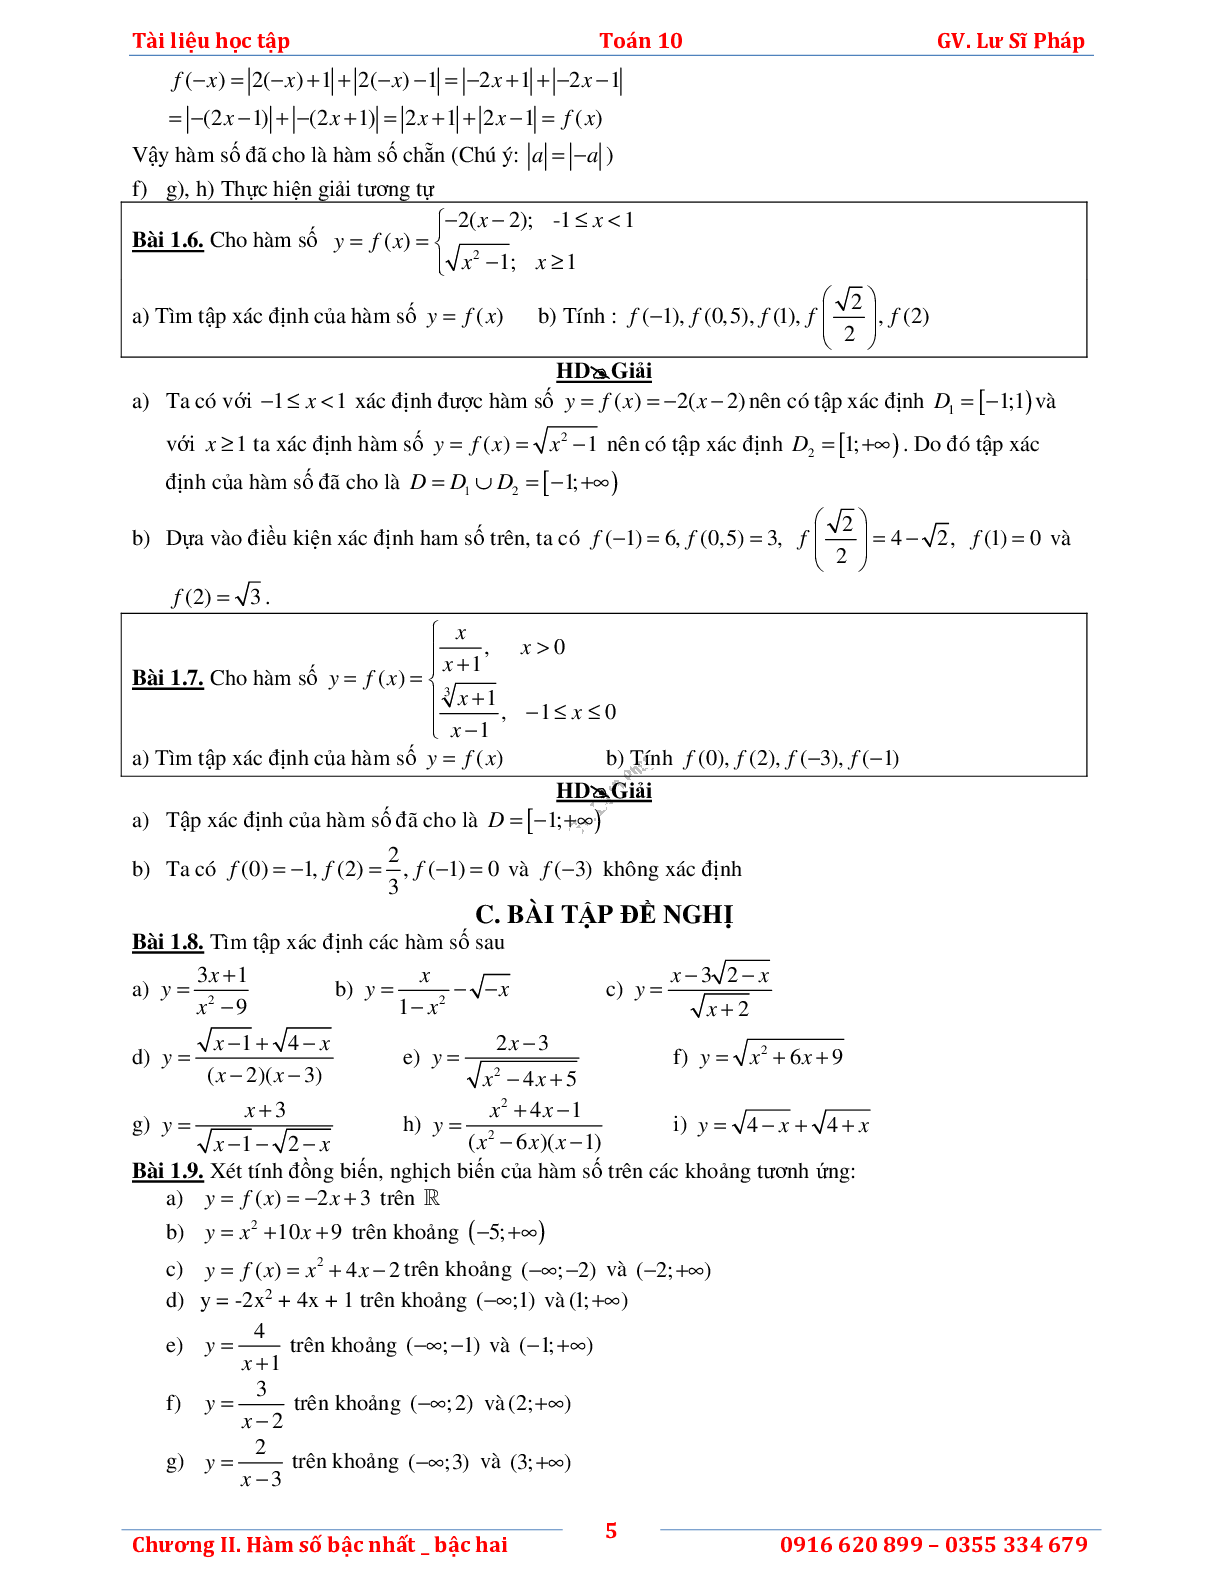 Tài liệu học tập hàm số bậc nhất và bậc hai (trang 9)